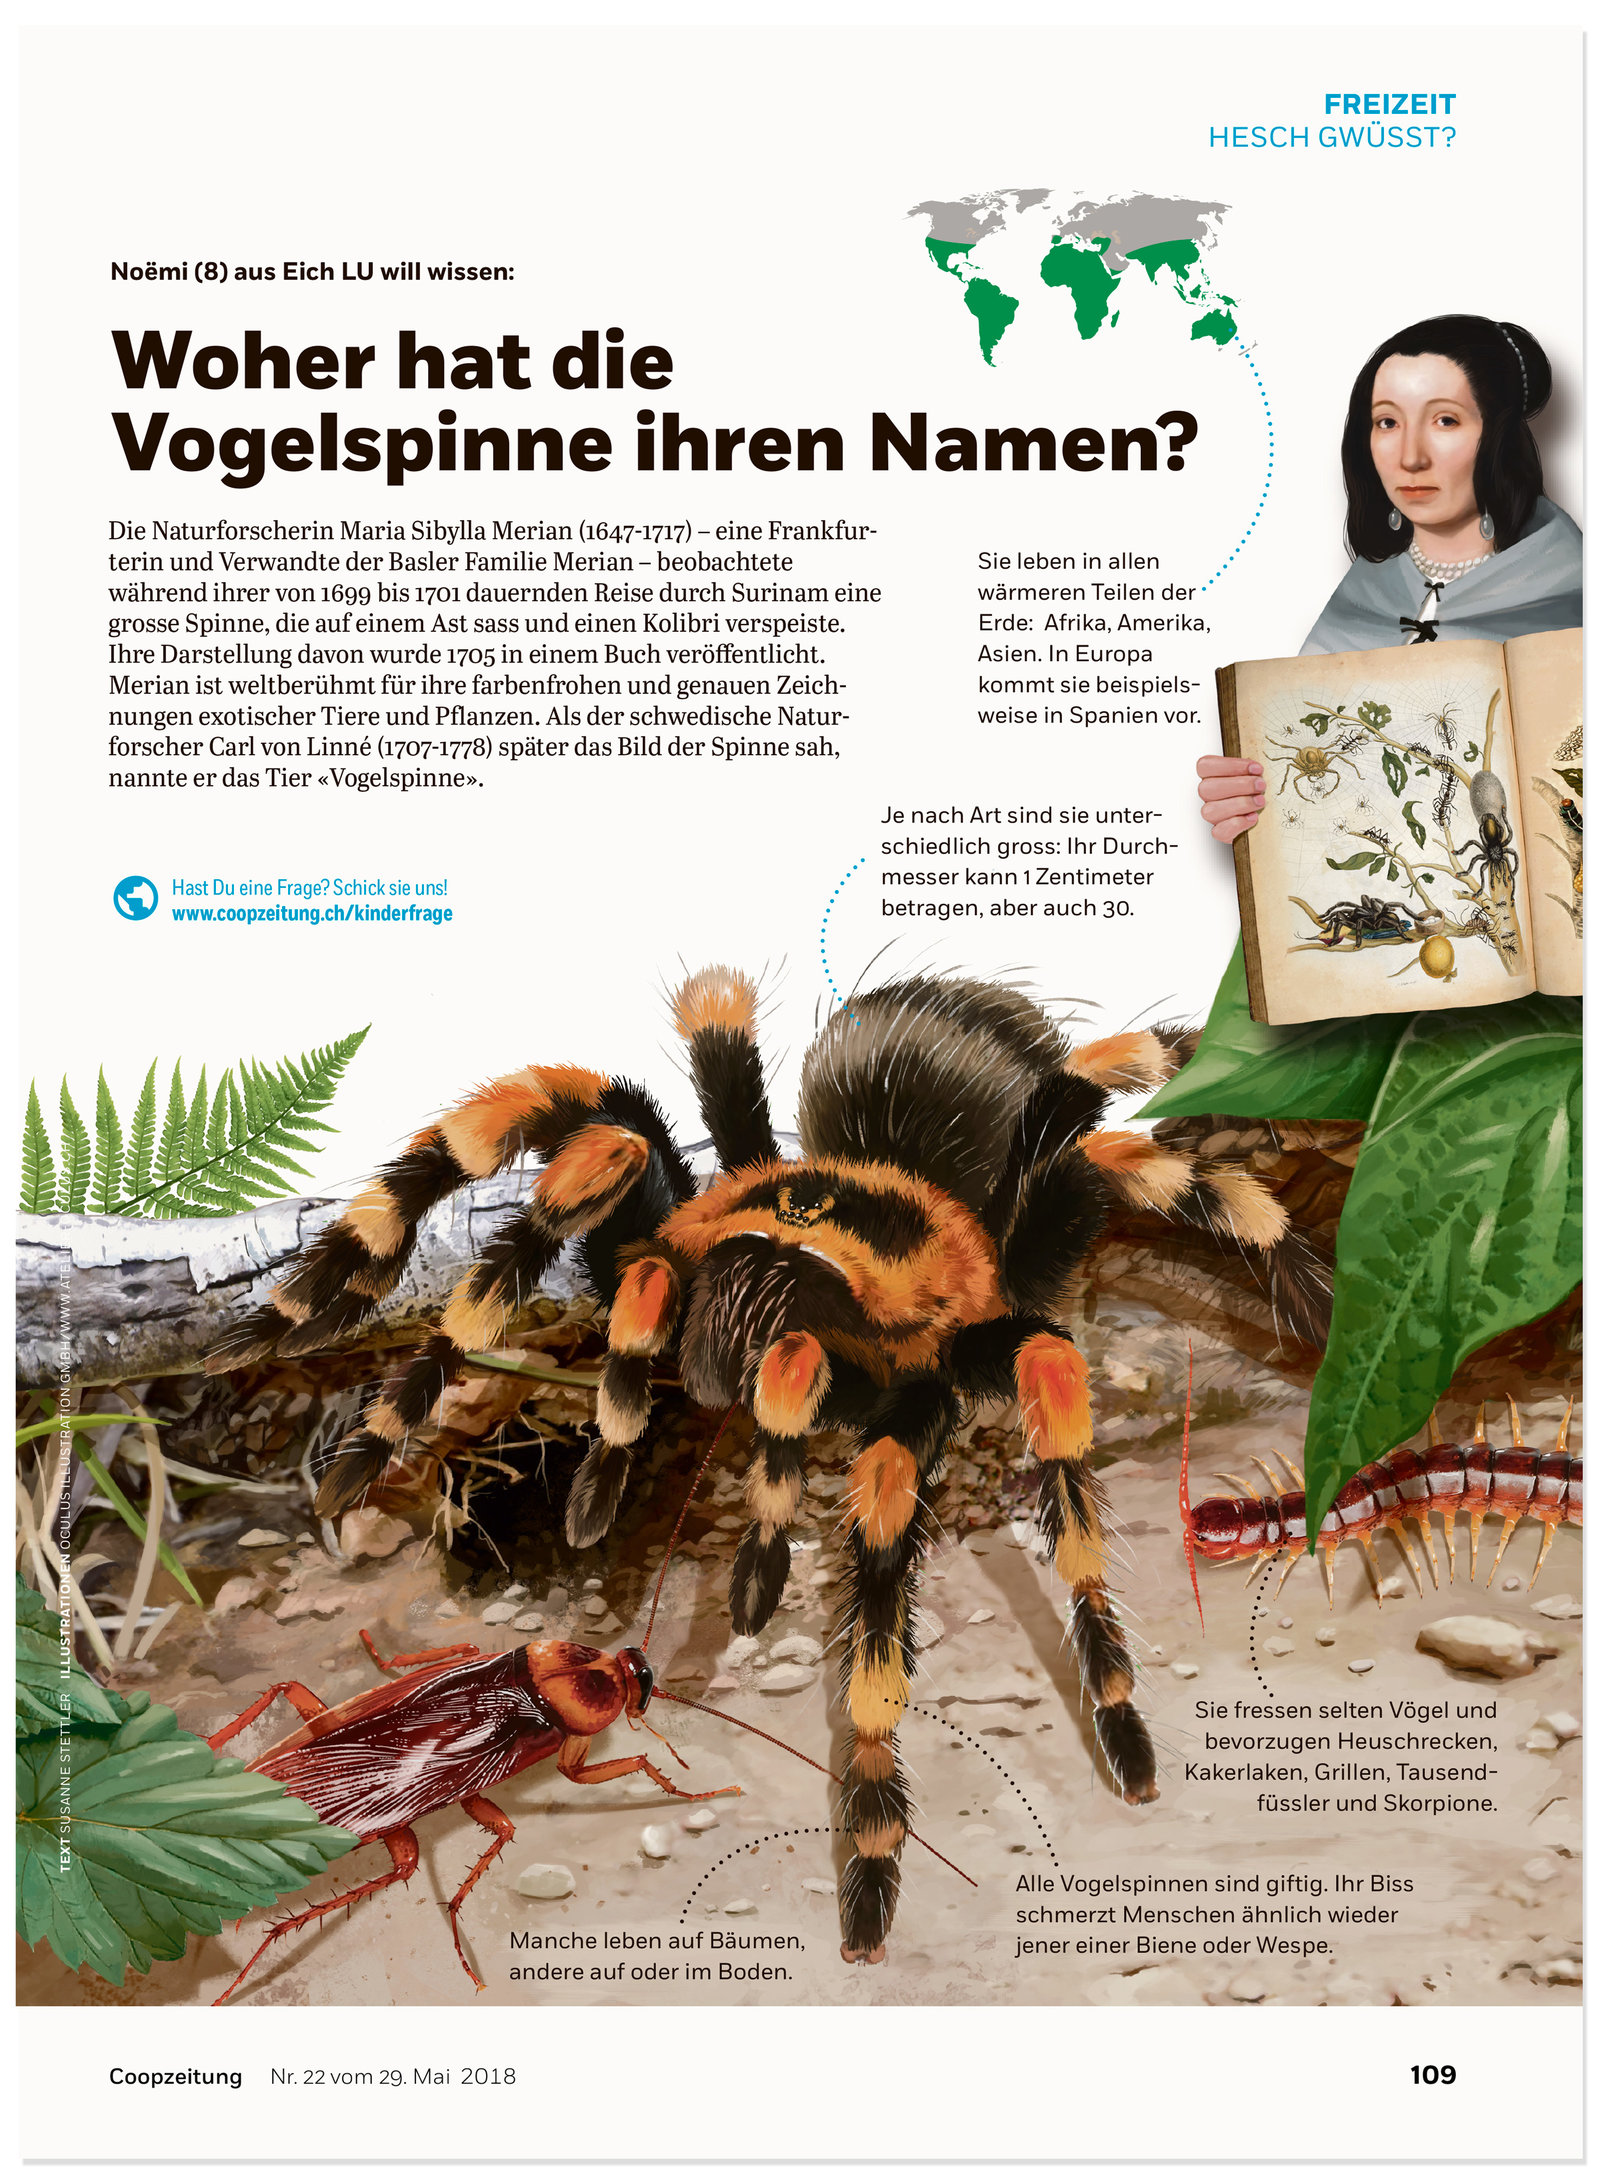 oculus-illustration-coopzeitung-hesch-gwuesst-vogelspinne